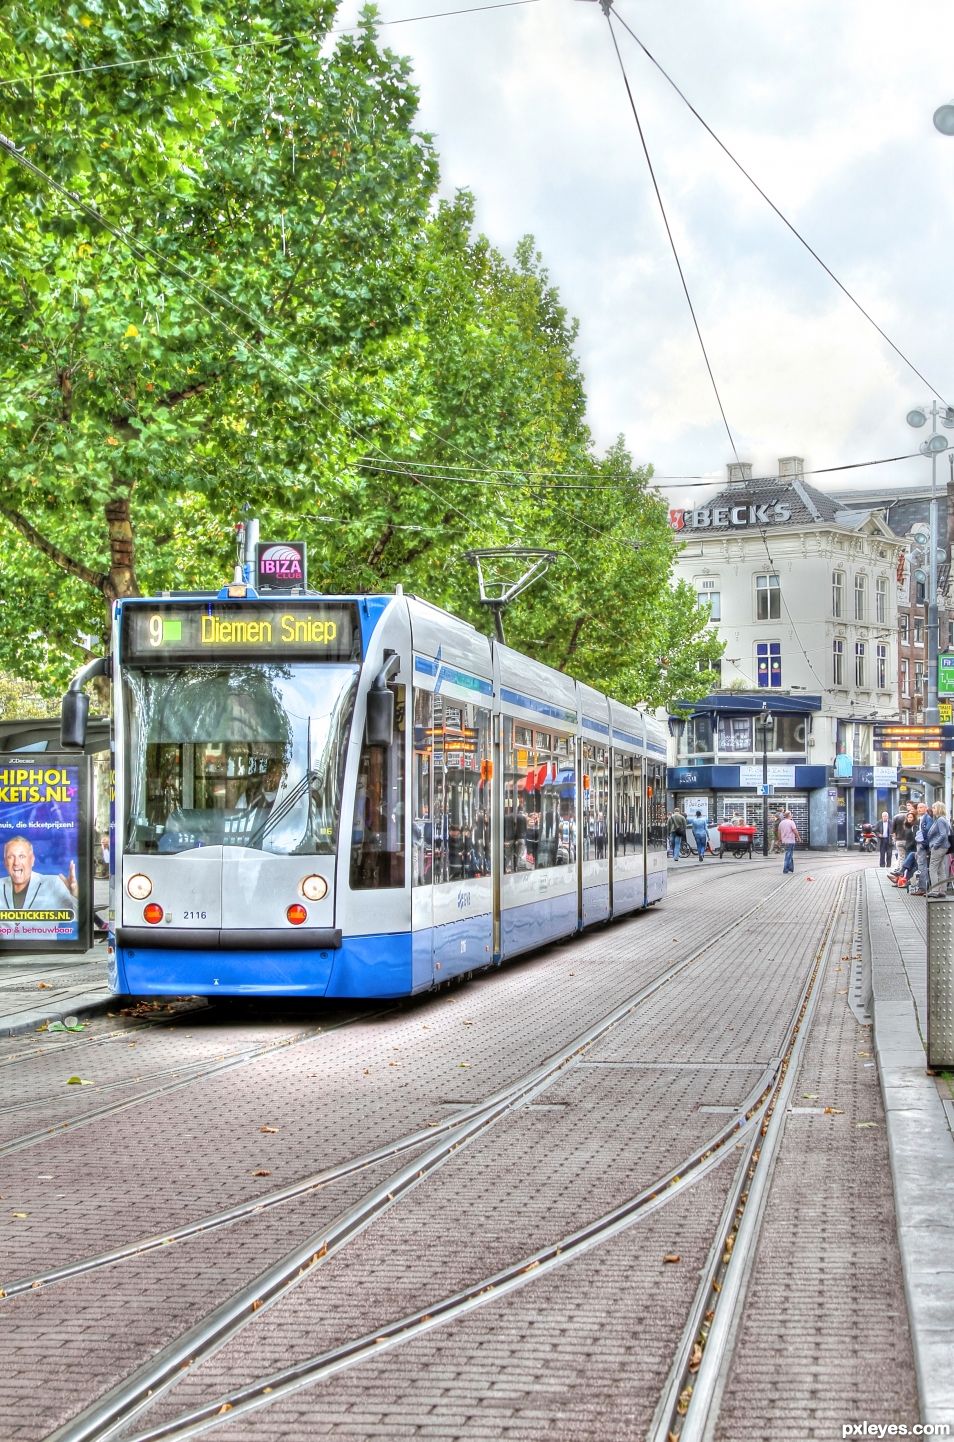 Trolley in Amsterdam